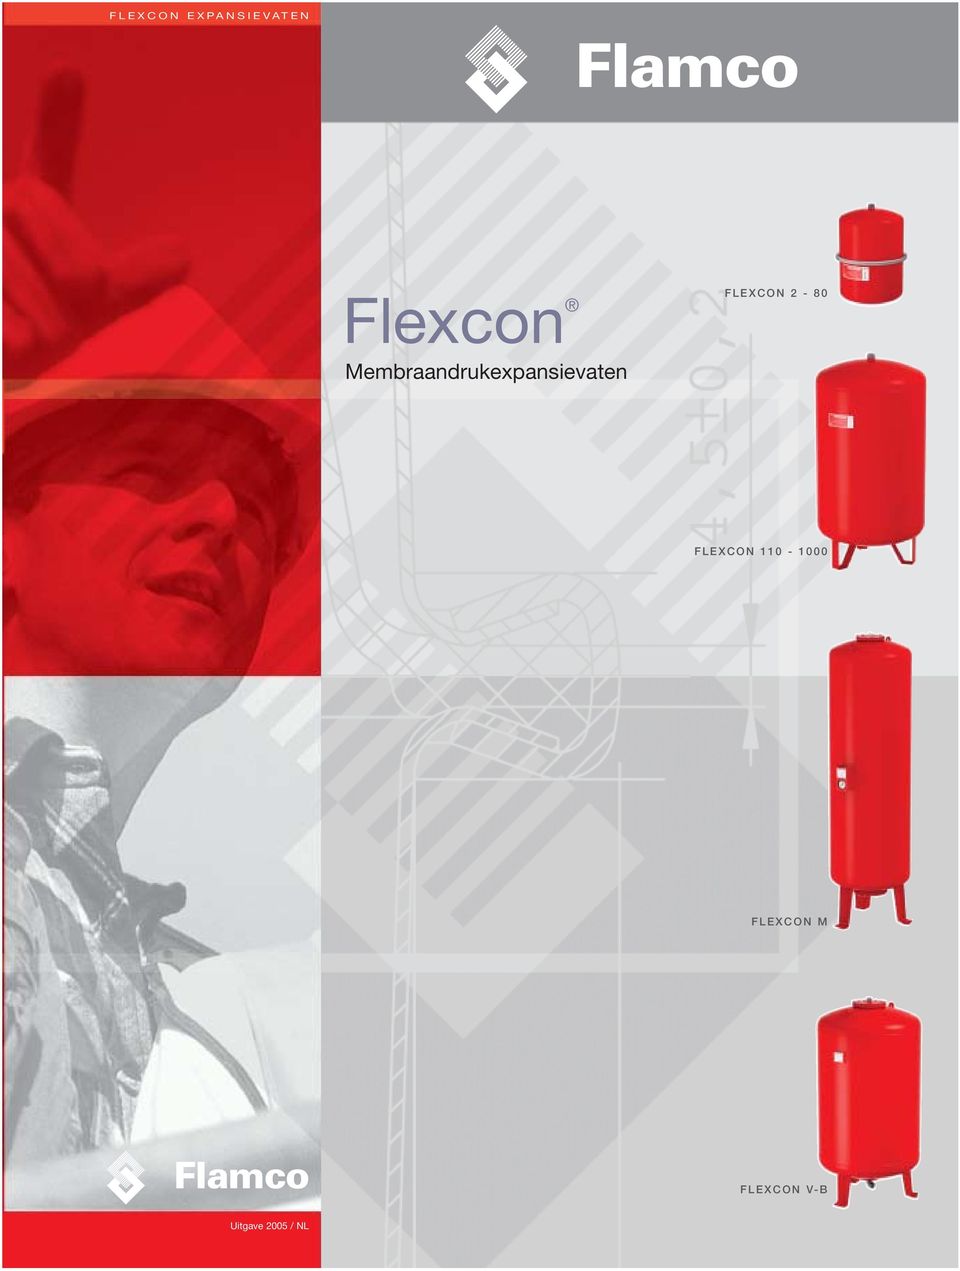 FLEXCON 2-80 FLEXCON 110-1000